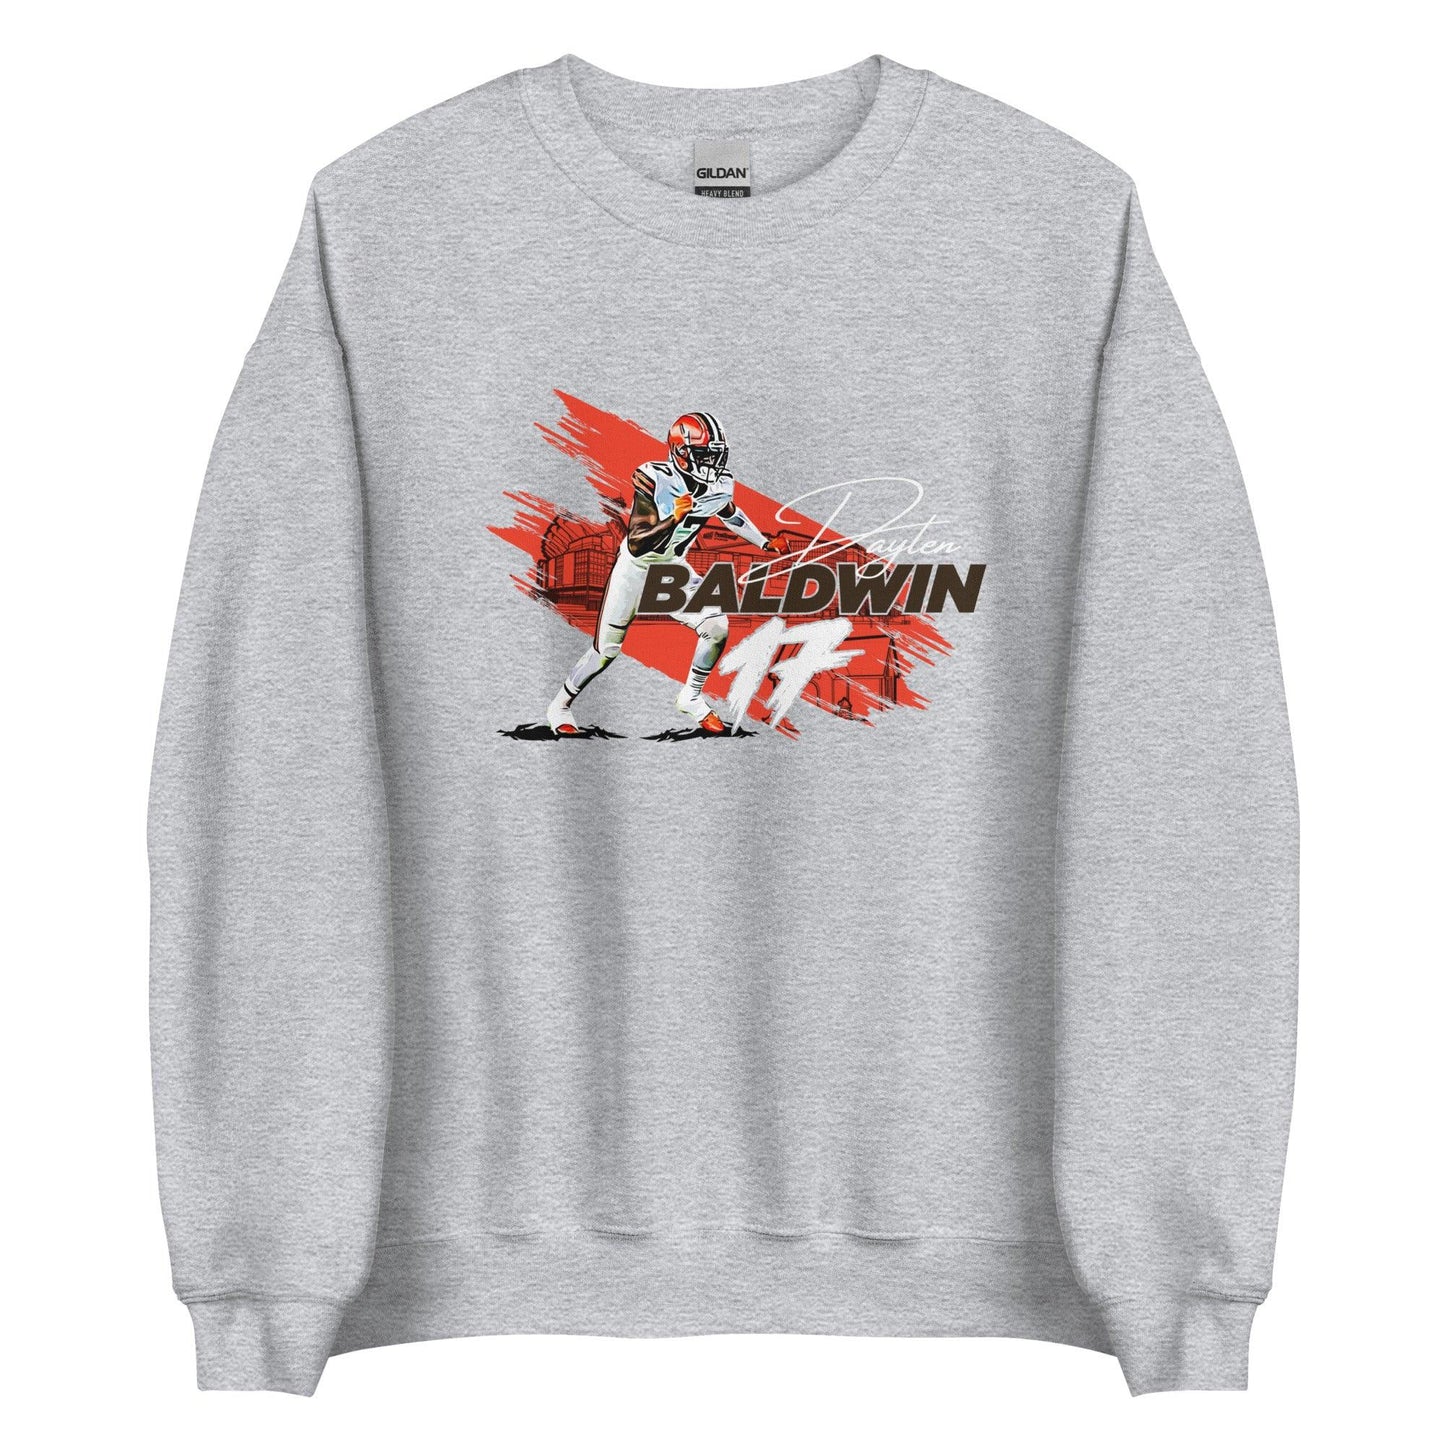 Daylen Baldwin Sweatshirt - Fan Arch